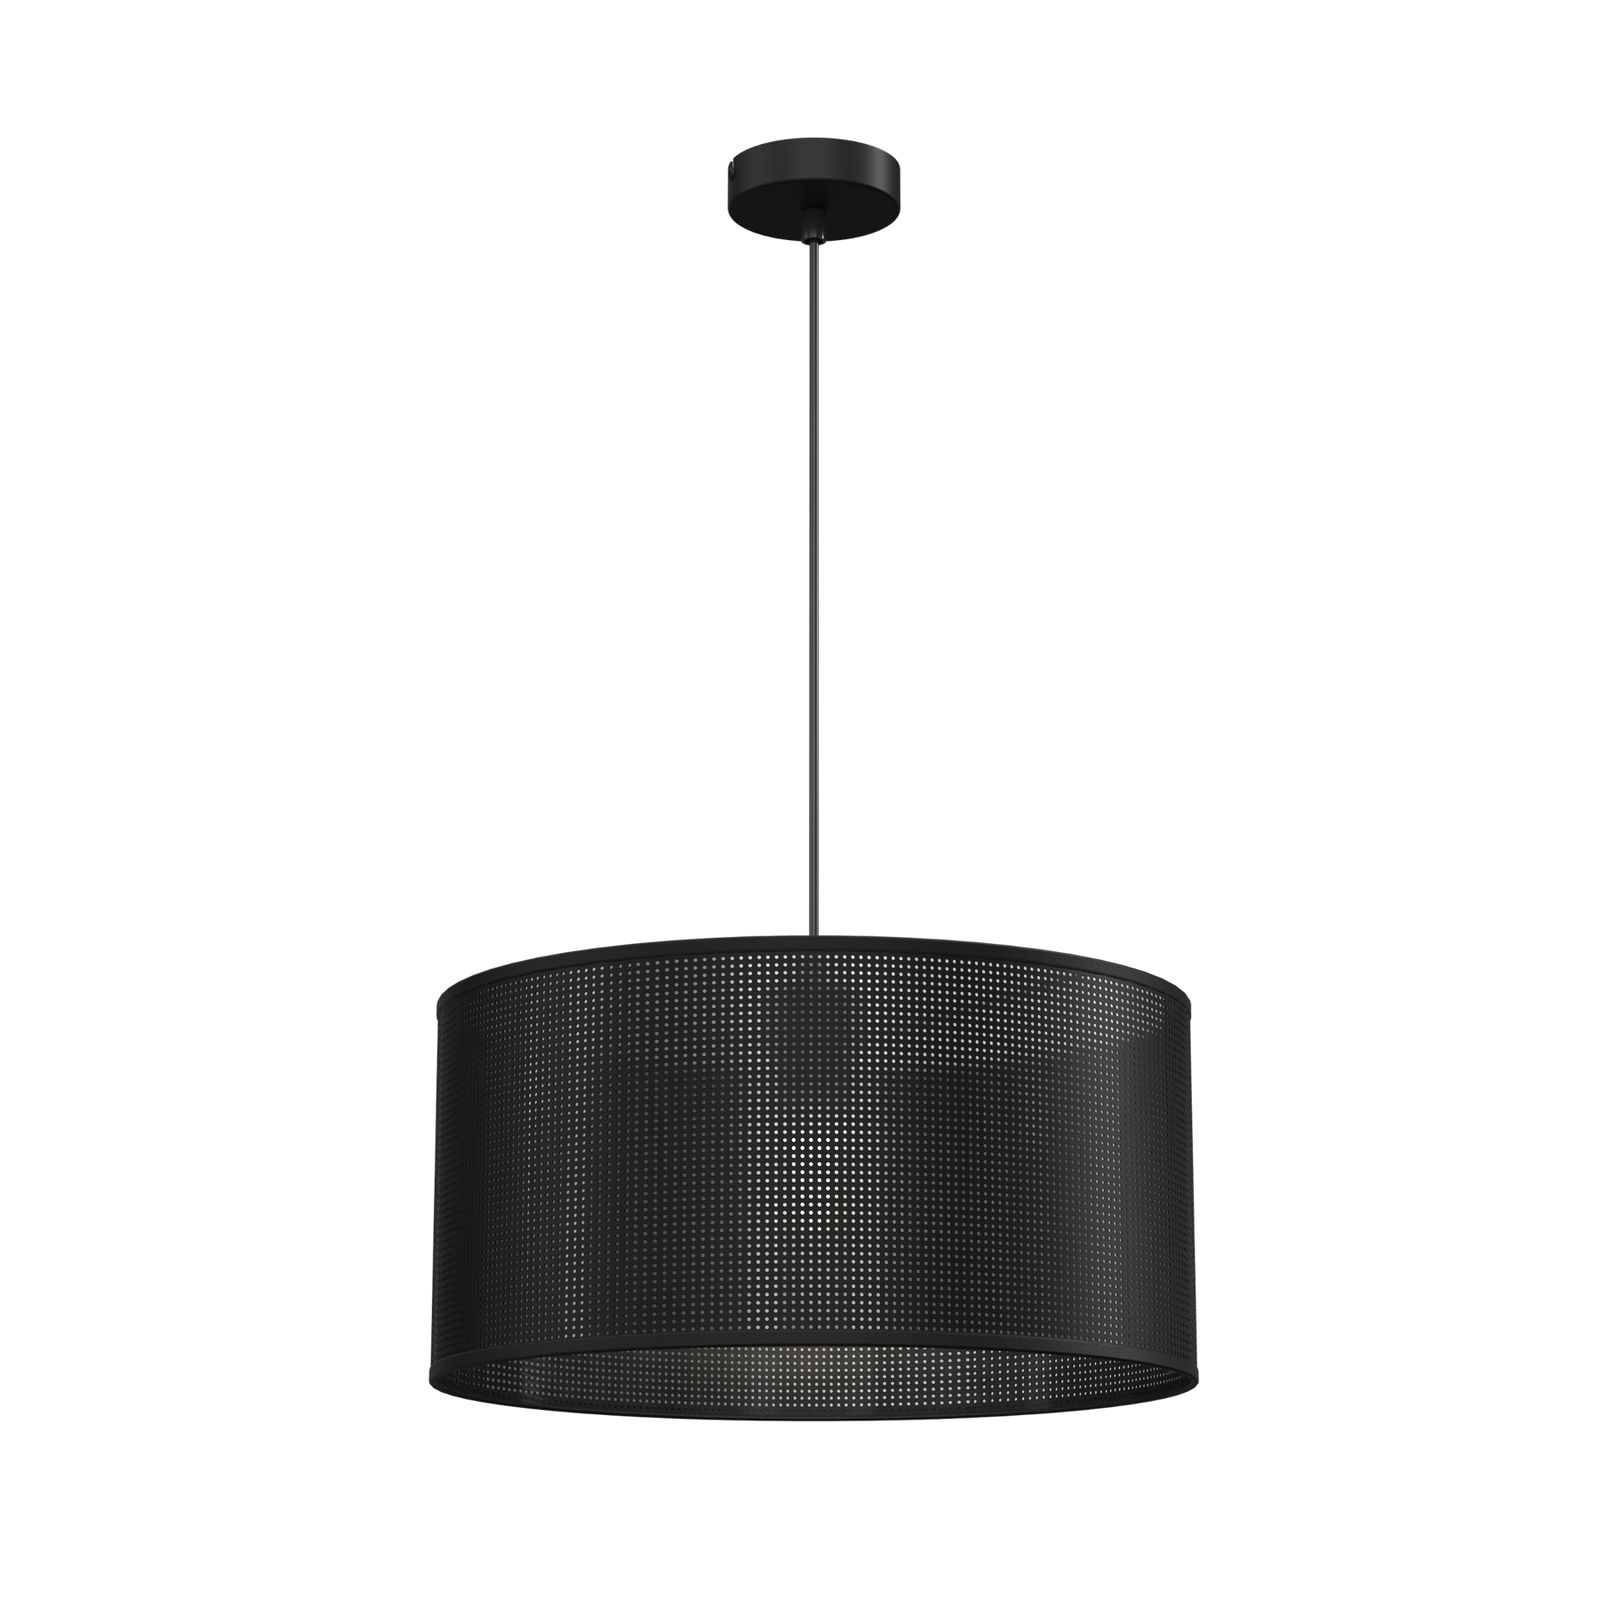 Jovin pendant light, one-bulb, Ø 40cm, black